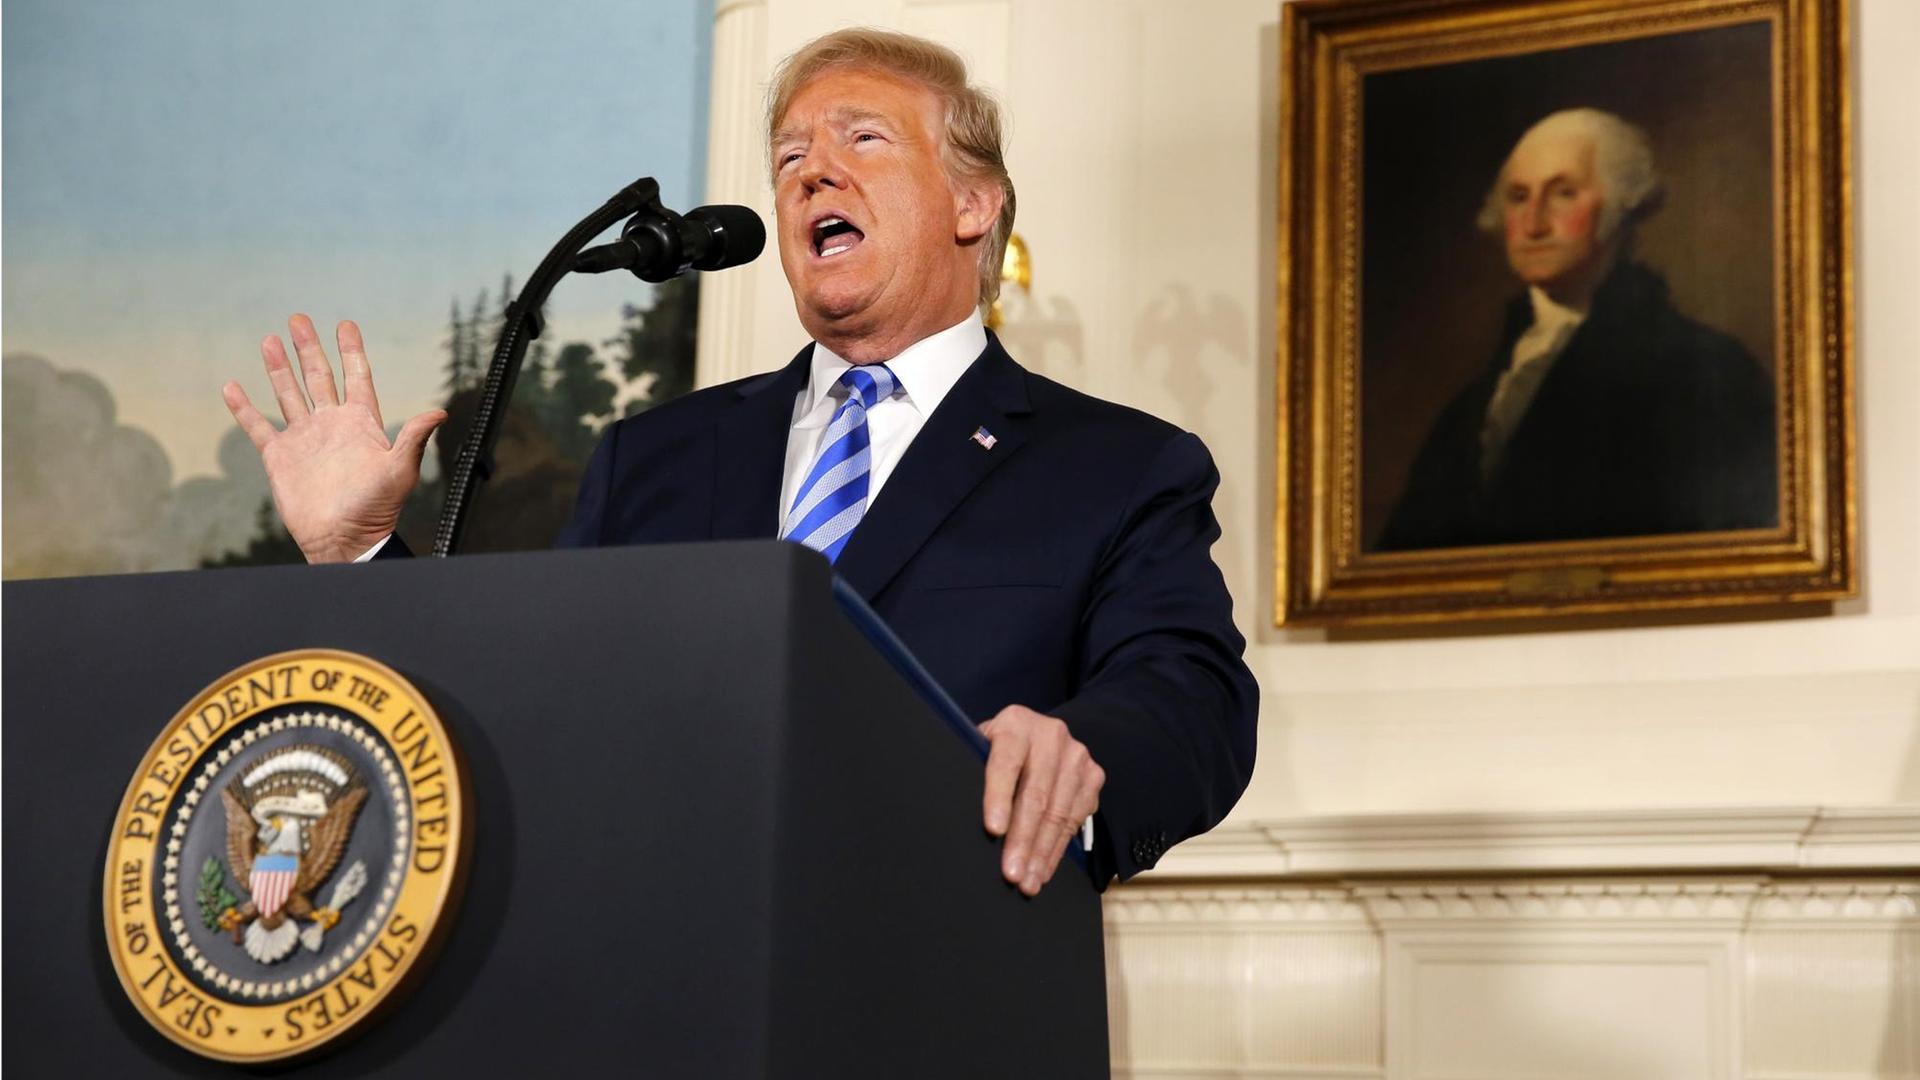 Präsident Donald Trump steht an einem Rednerpult. Die rechte Hand ist erhoben. Er verkündet das Ende des Atom-Deals mit dem Iran. Im Hintergrund ist ein Gemälde von George Washington zu sehen.